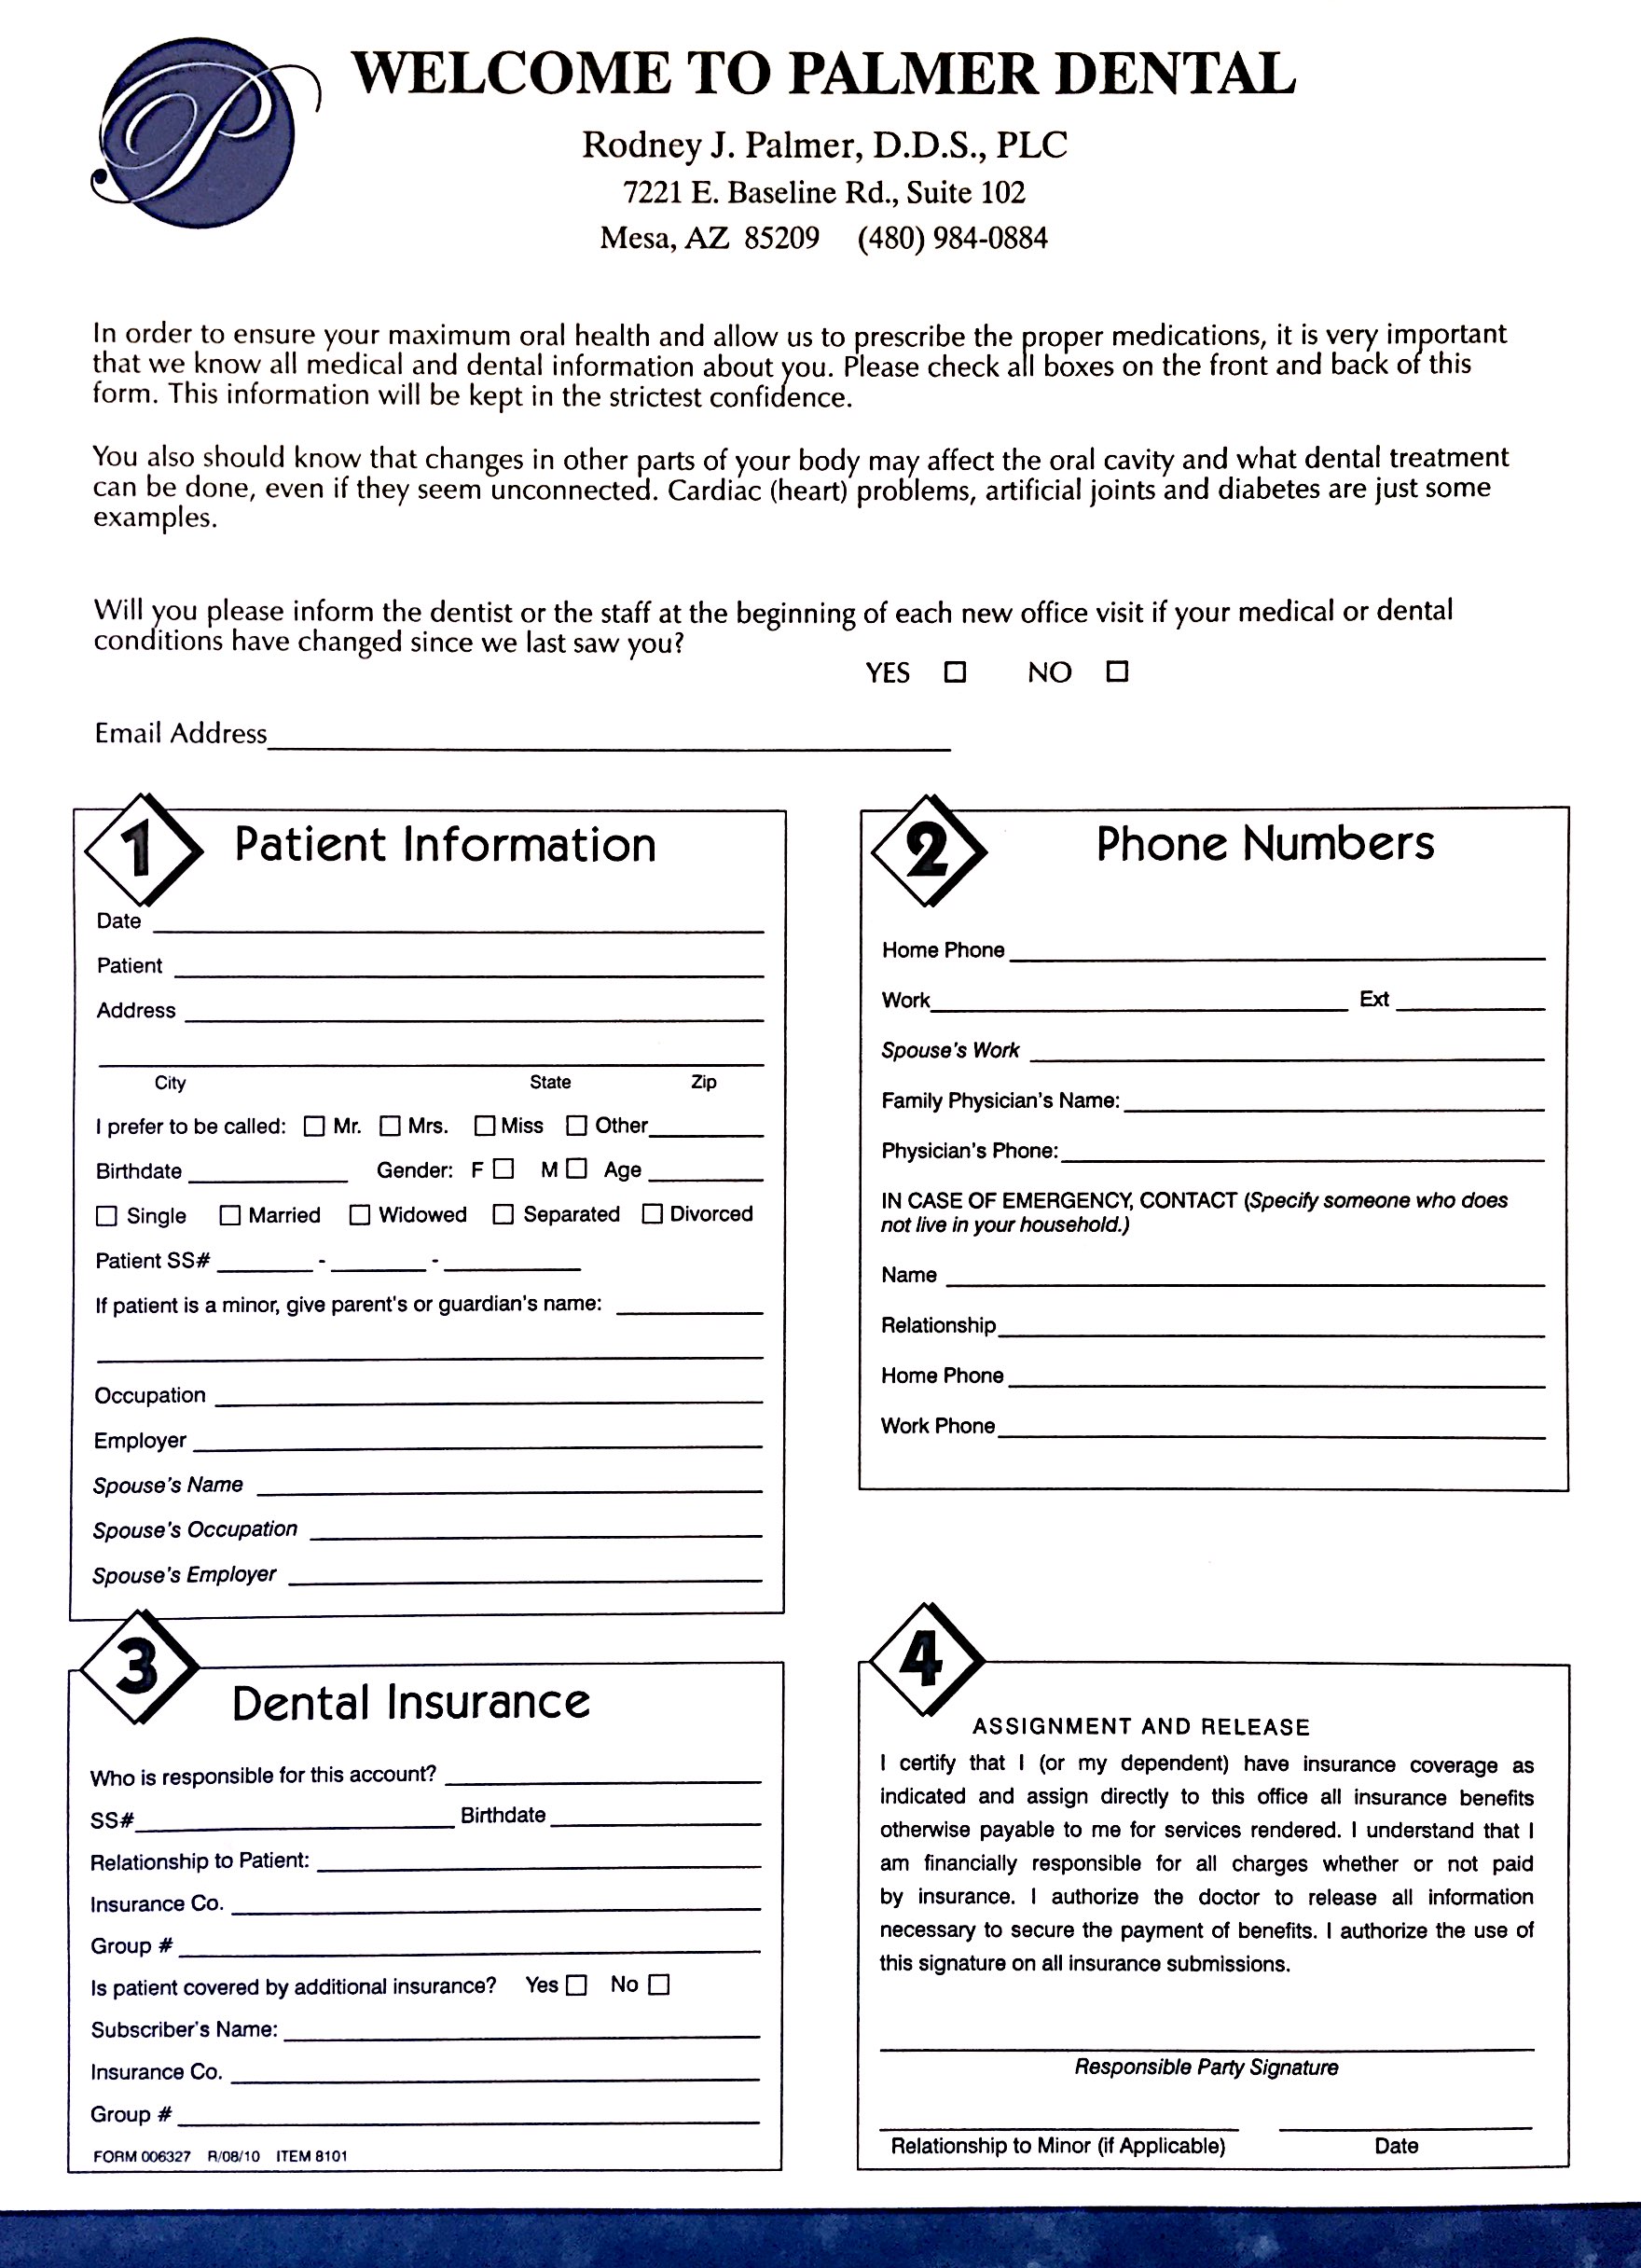 Patient Information doc 8_1